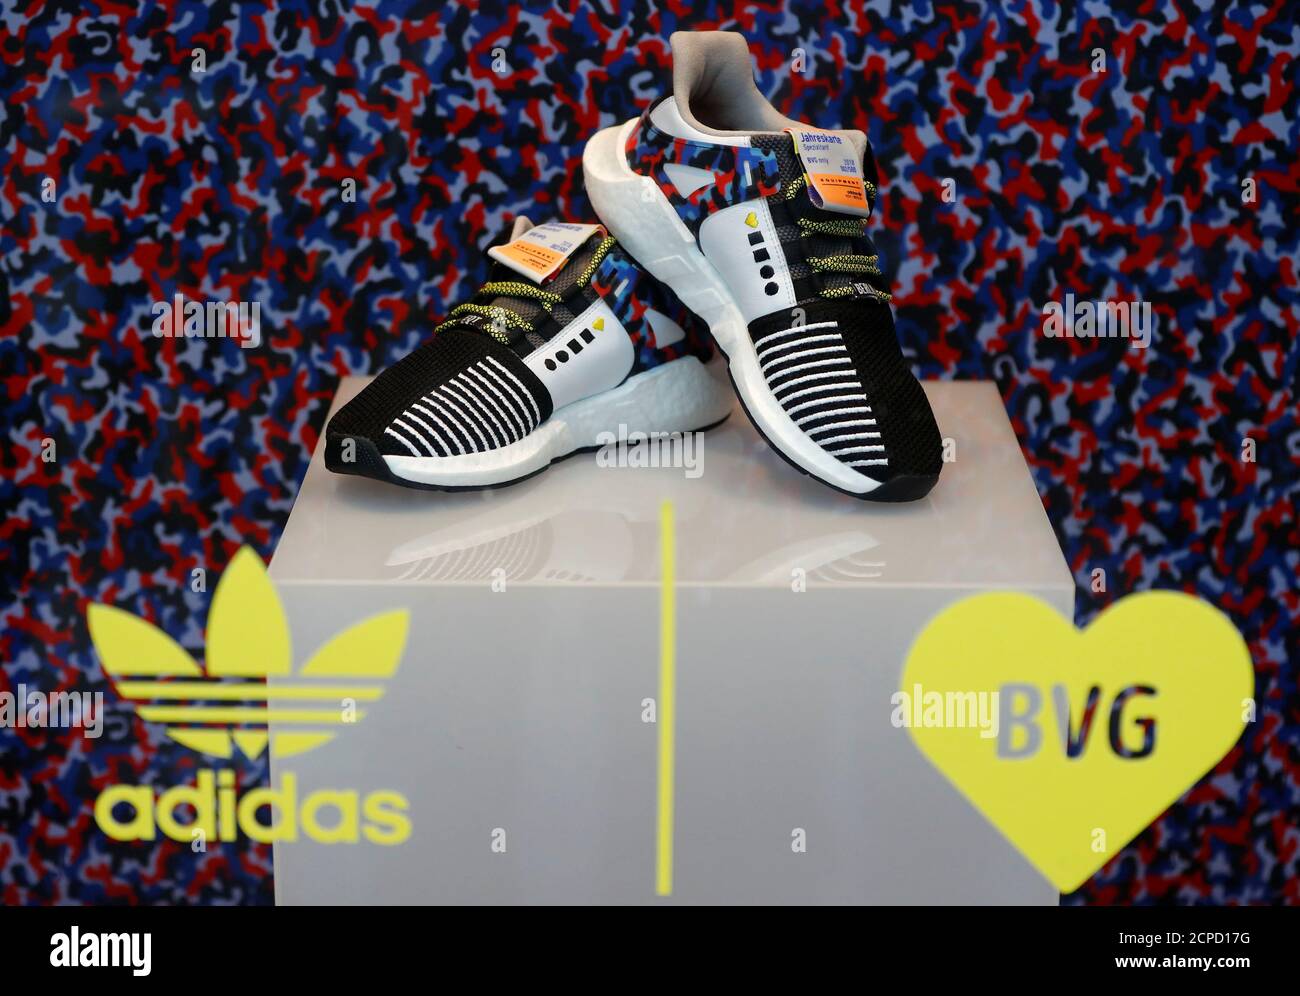 Die Adidas Limited-Edition Sneaker, die zum Berliner U-Bahn-Sitzdesign  passen und einen Jahresreisepass enthalten, werden am 16. Januar 2018 im  Schuhgeschäft 